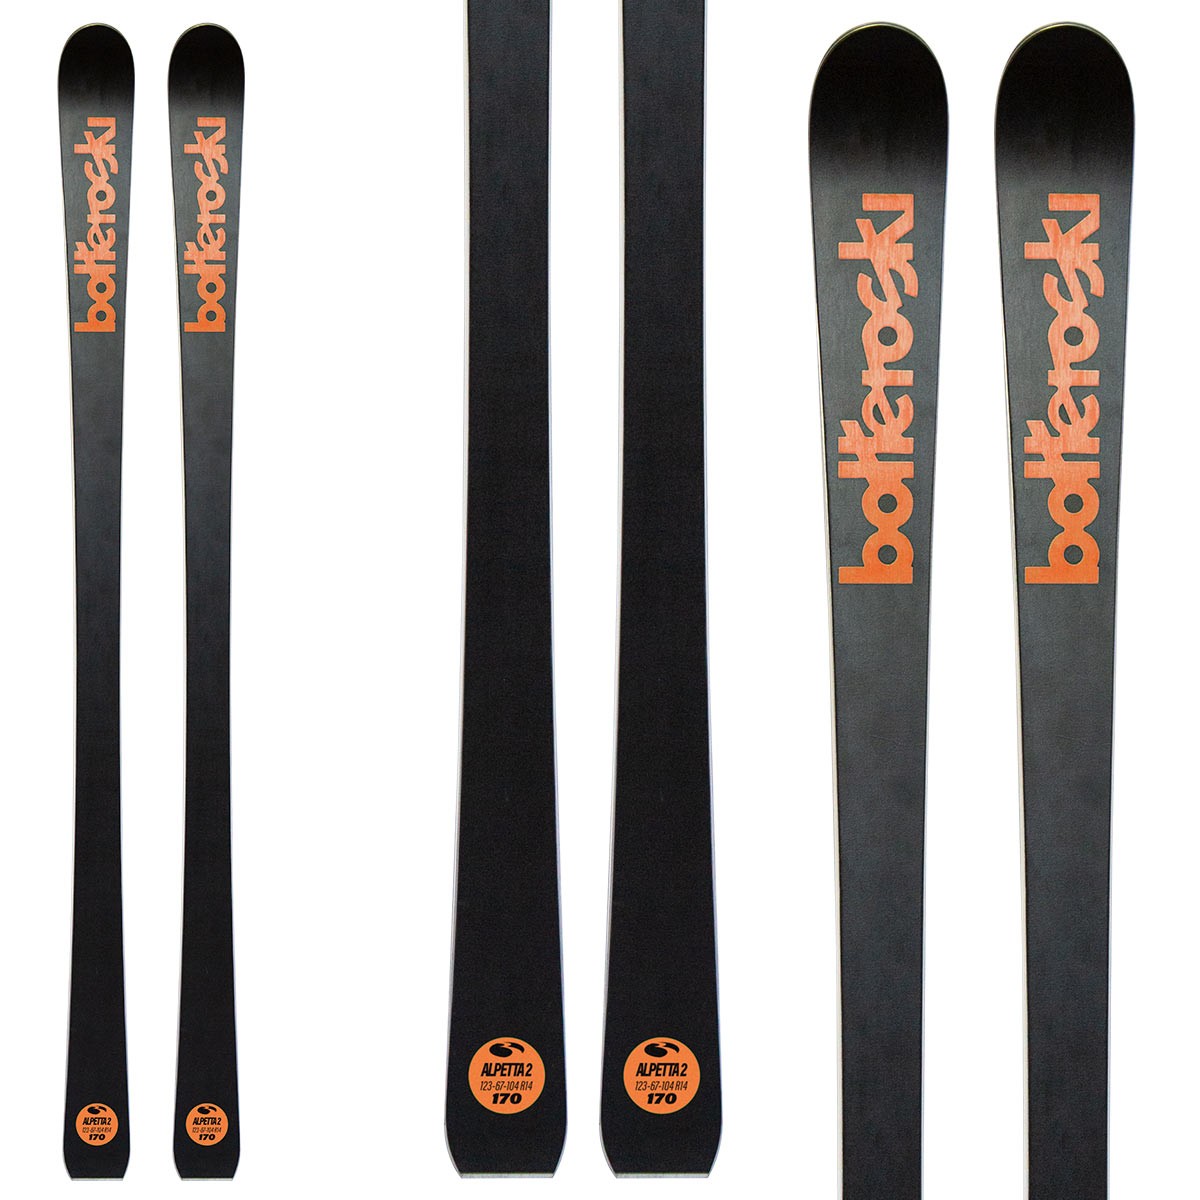  Sci Bottero Ski Alpetta 2 con attacchi Vsp 310 con Vist Speed Spacer System (Colore: nero-arancio, Taglia: 163) 